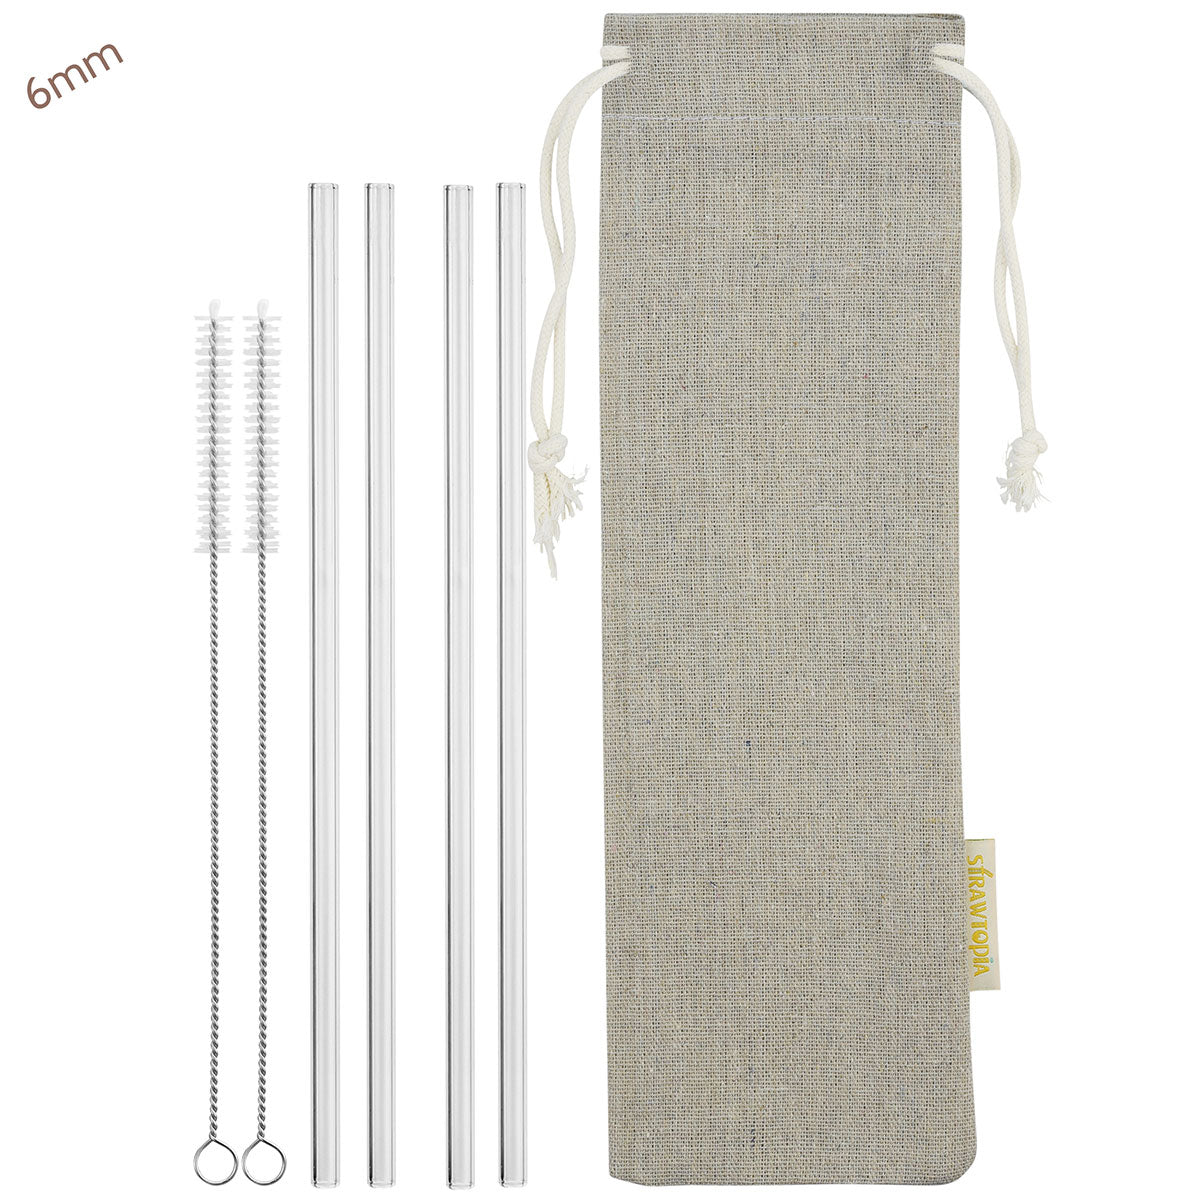 Home - Eco Glass Straws